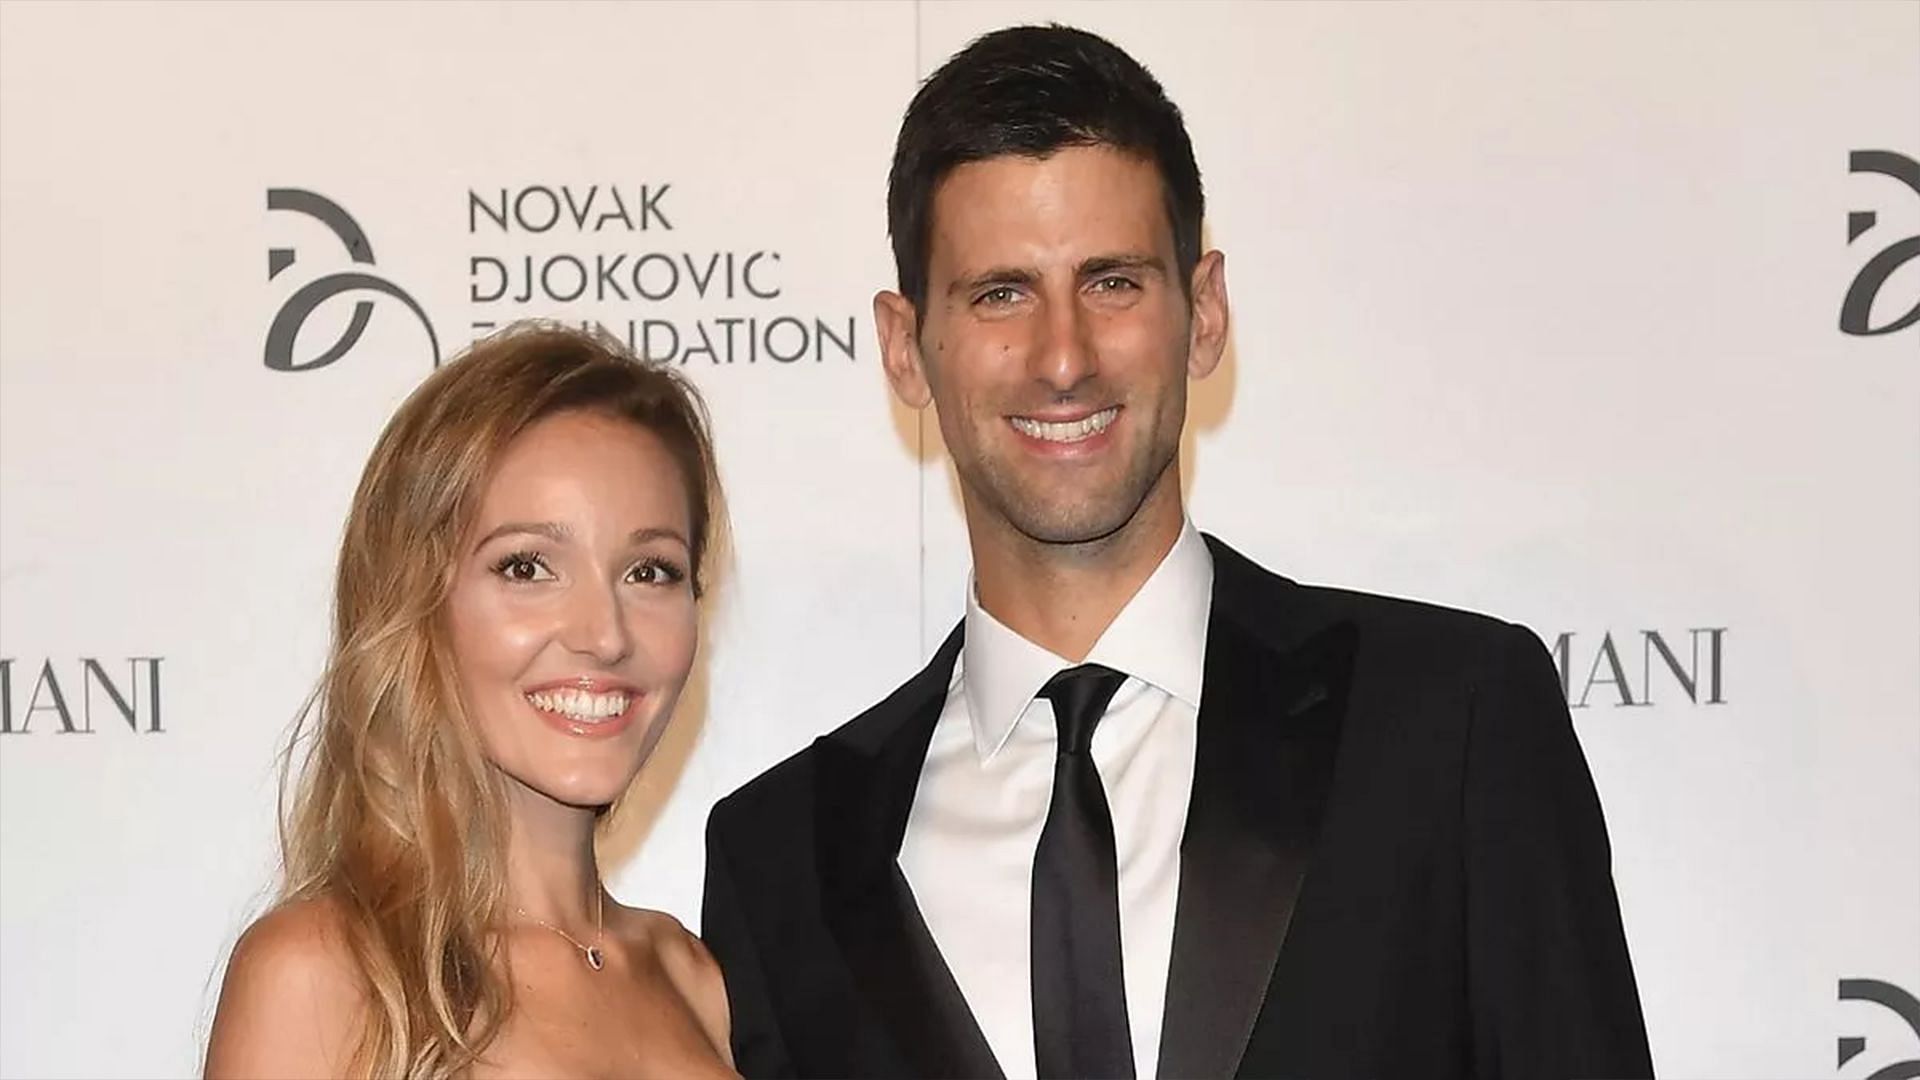 Novak Djokovic and his wife, Jelena Djokovic